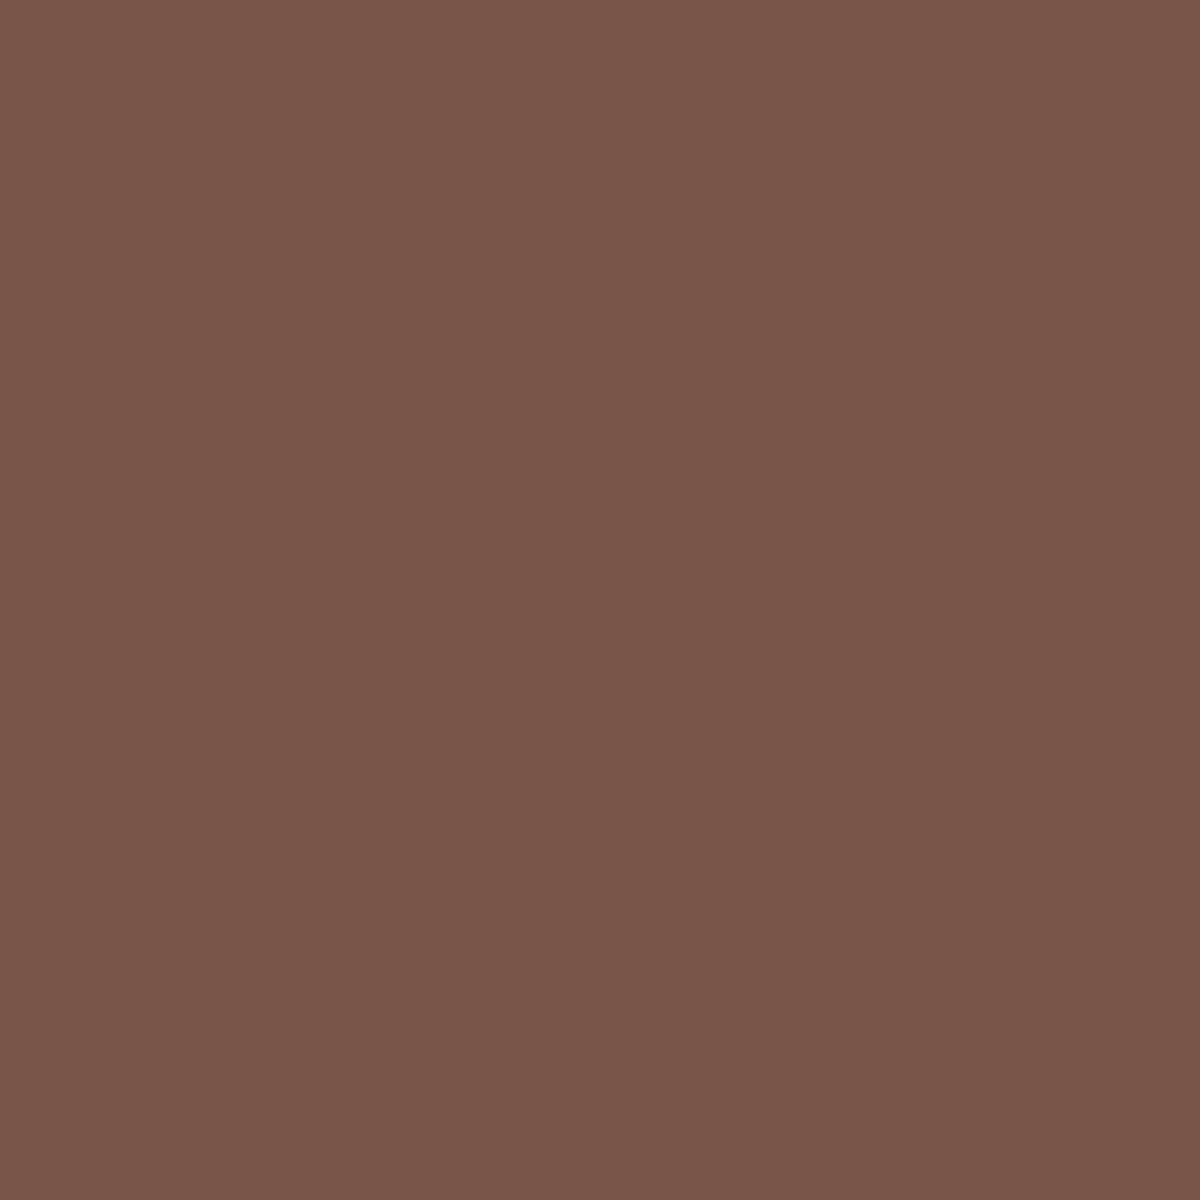 Dark Nut Brown 2098-30